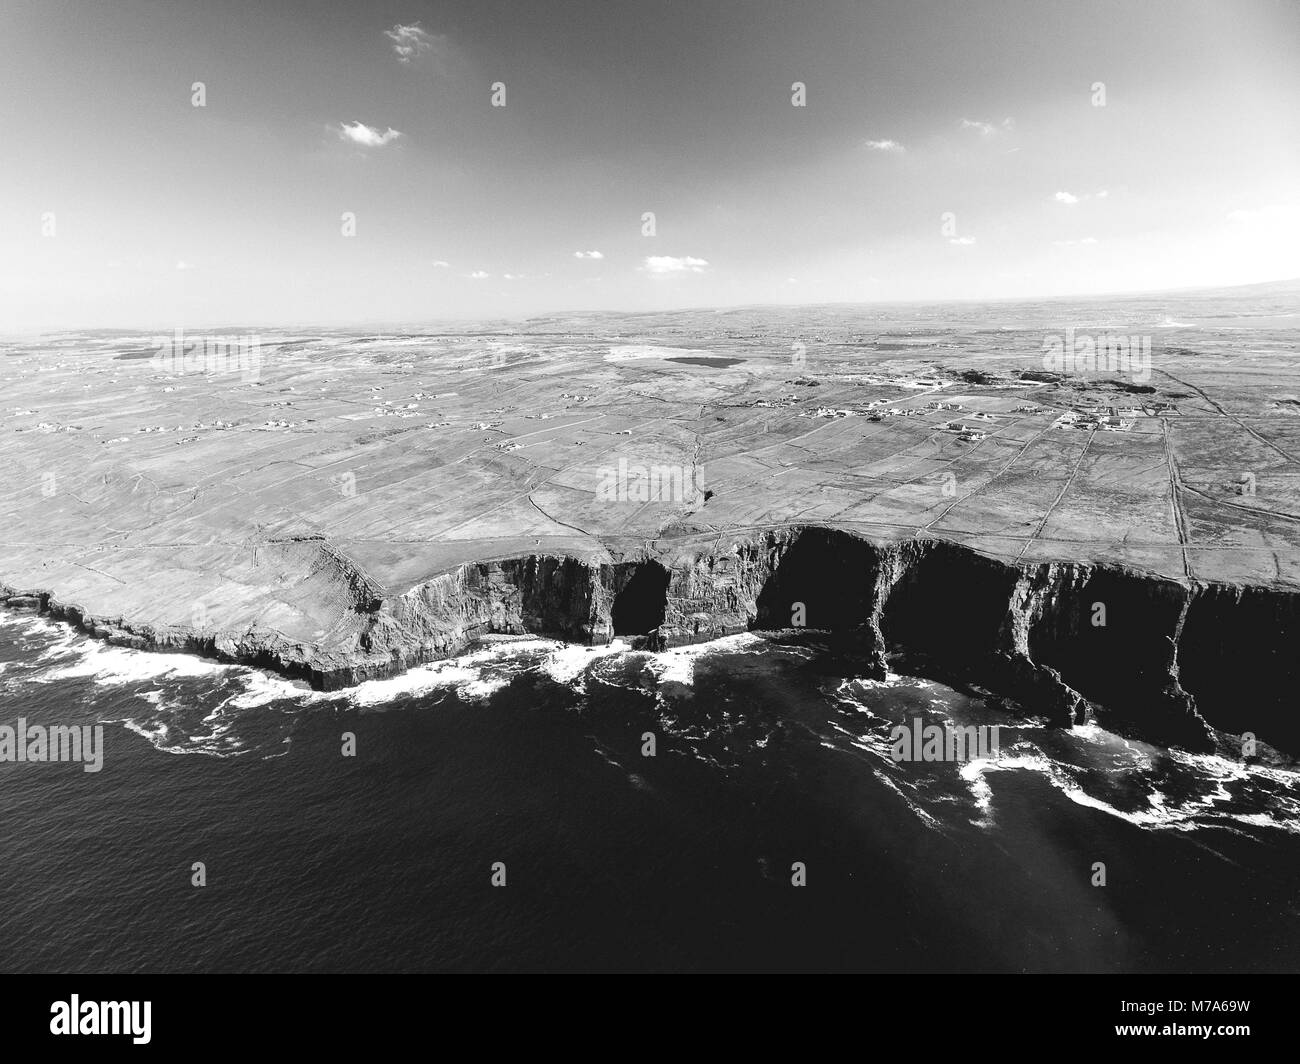 Photographie de paysage en noir et blanc des falaises de Moher dans le comté de Clare, Irlande Banque D'Images